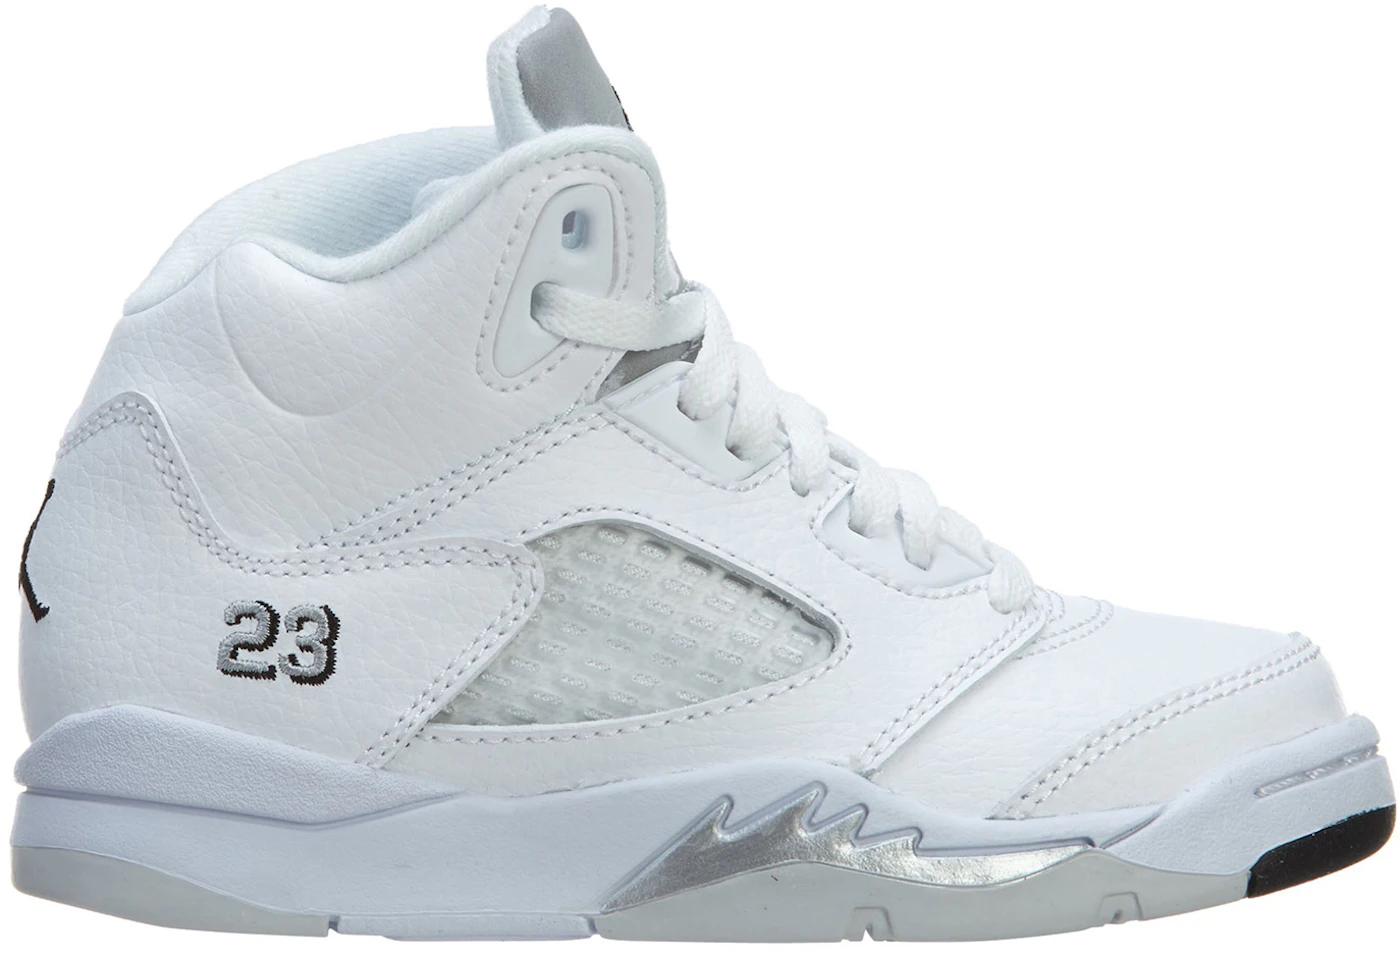 Size 10 - Jordan 5 Retro Metallic White 2015 886549388829 